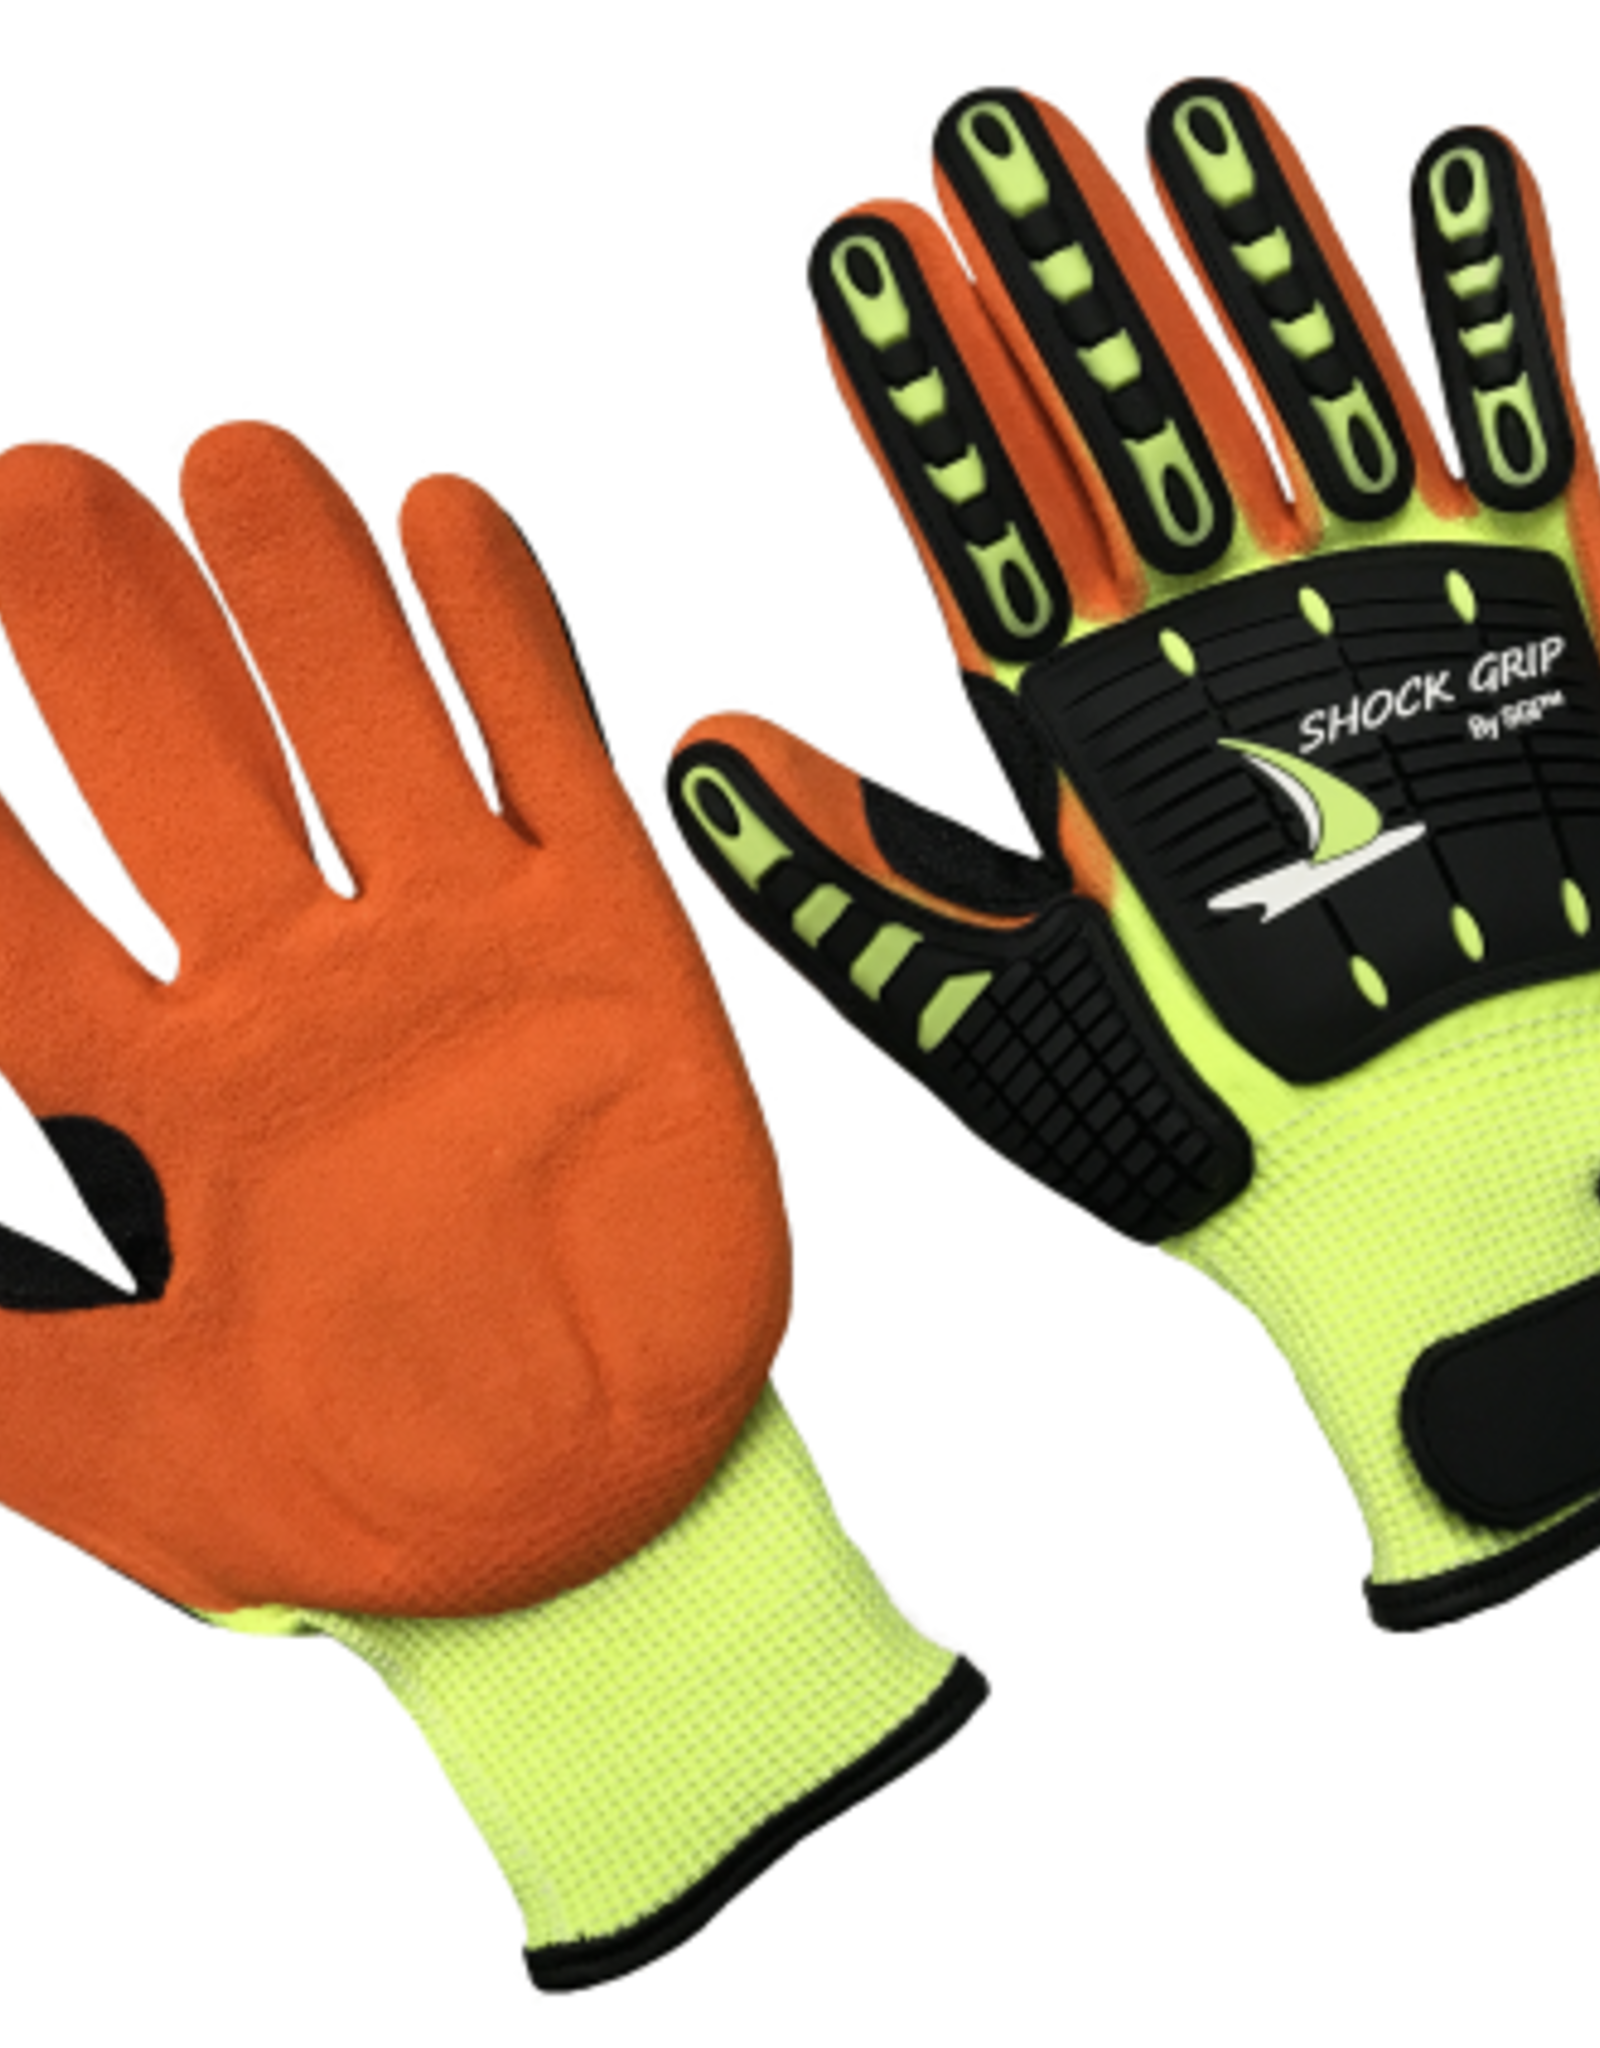 Multi-Task Cut Resistant Glove HVNGOR5, SZ. Large